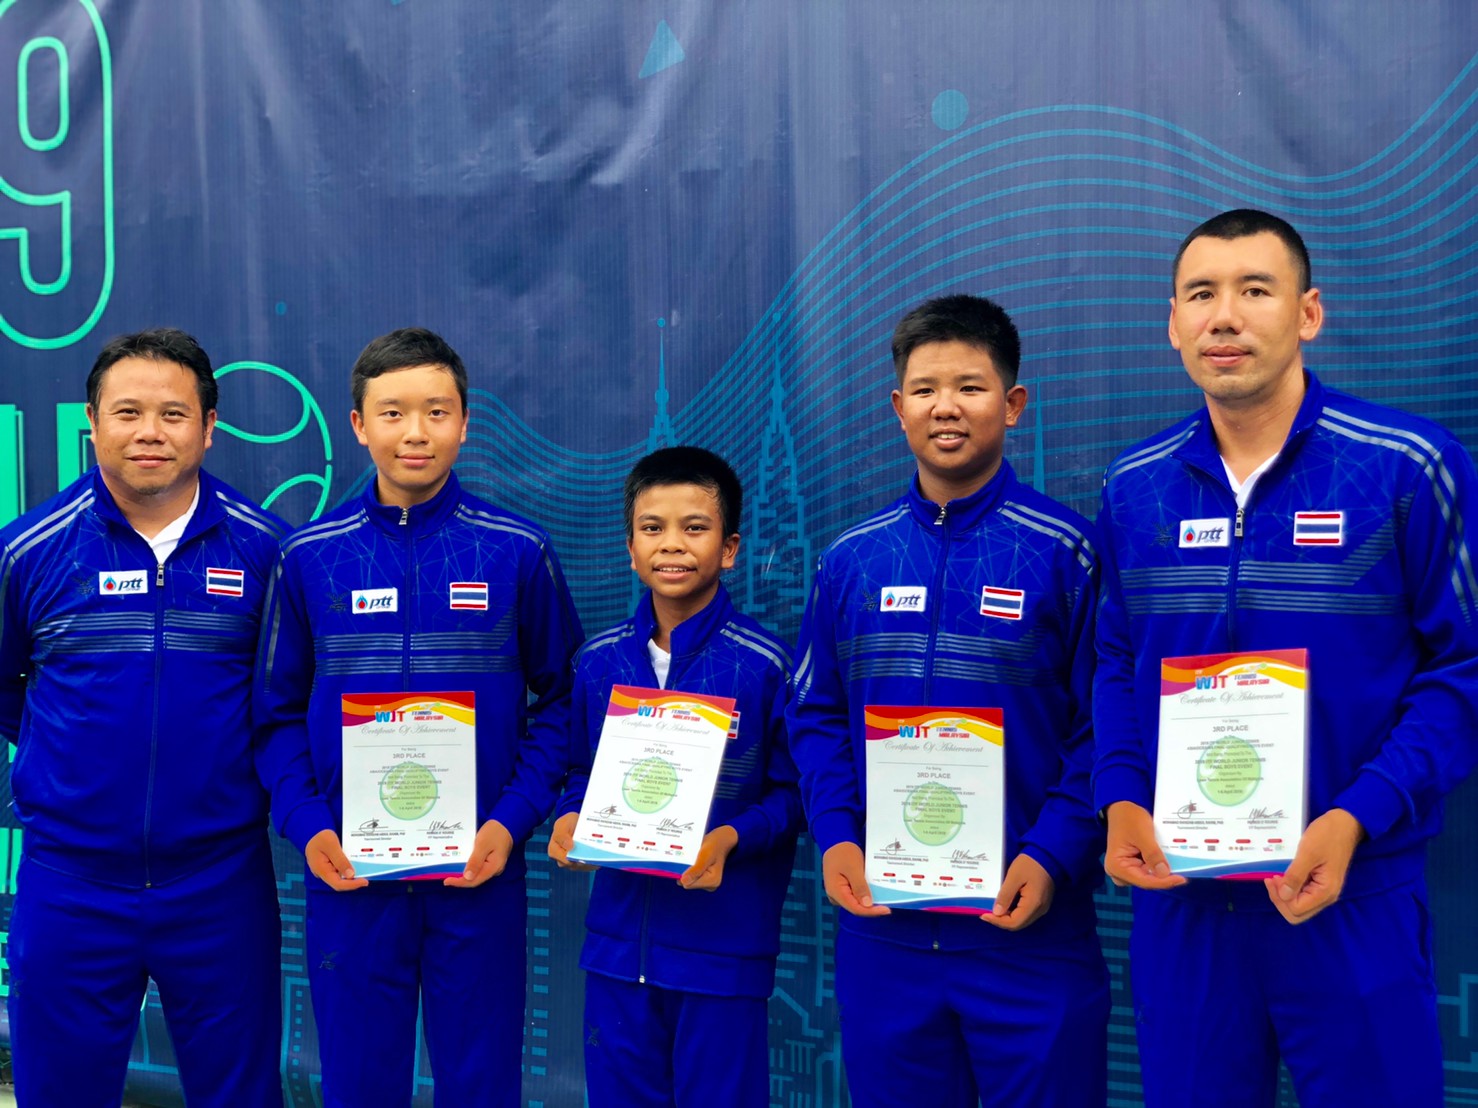 ทีมหวดยู-14ชายไทยได้ที่ 3 เอเชีย คว้าสิทธิ์ลุยศึกชิงแชมป์โลกที่เช็ก